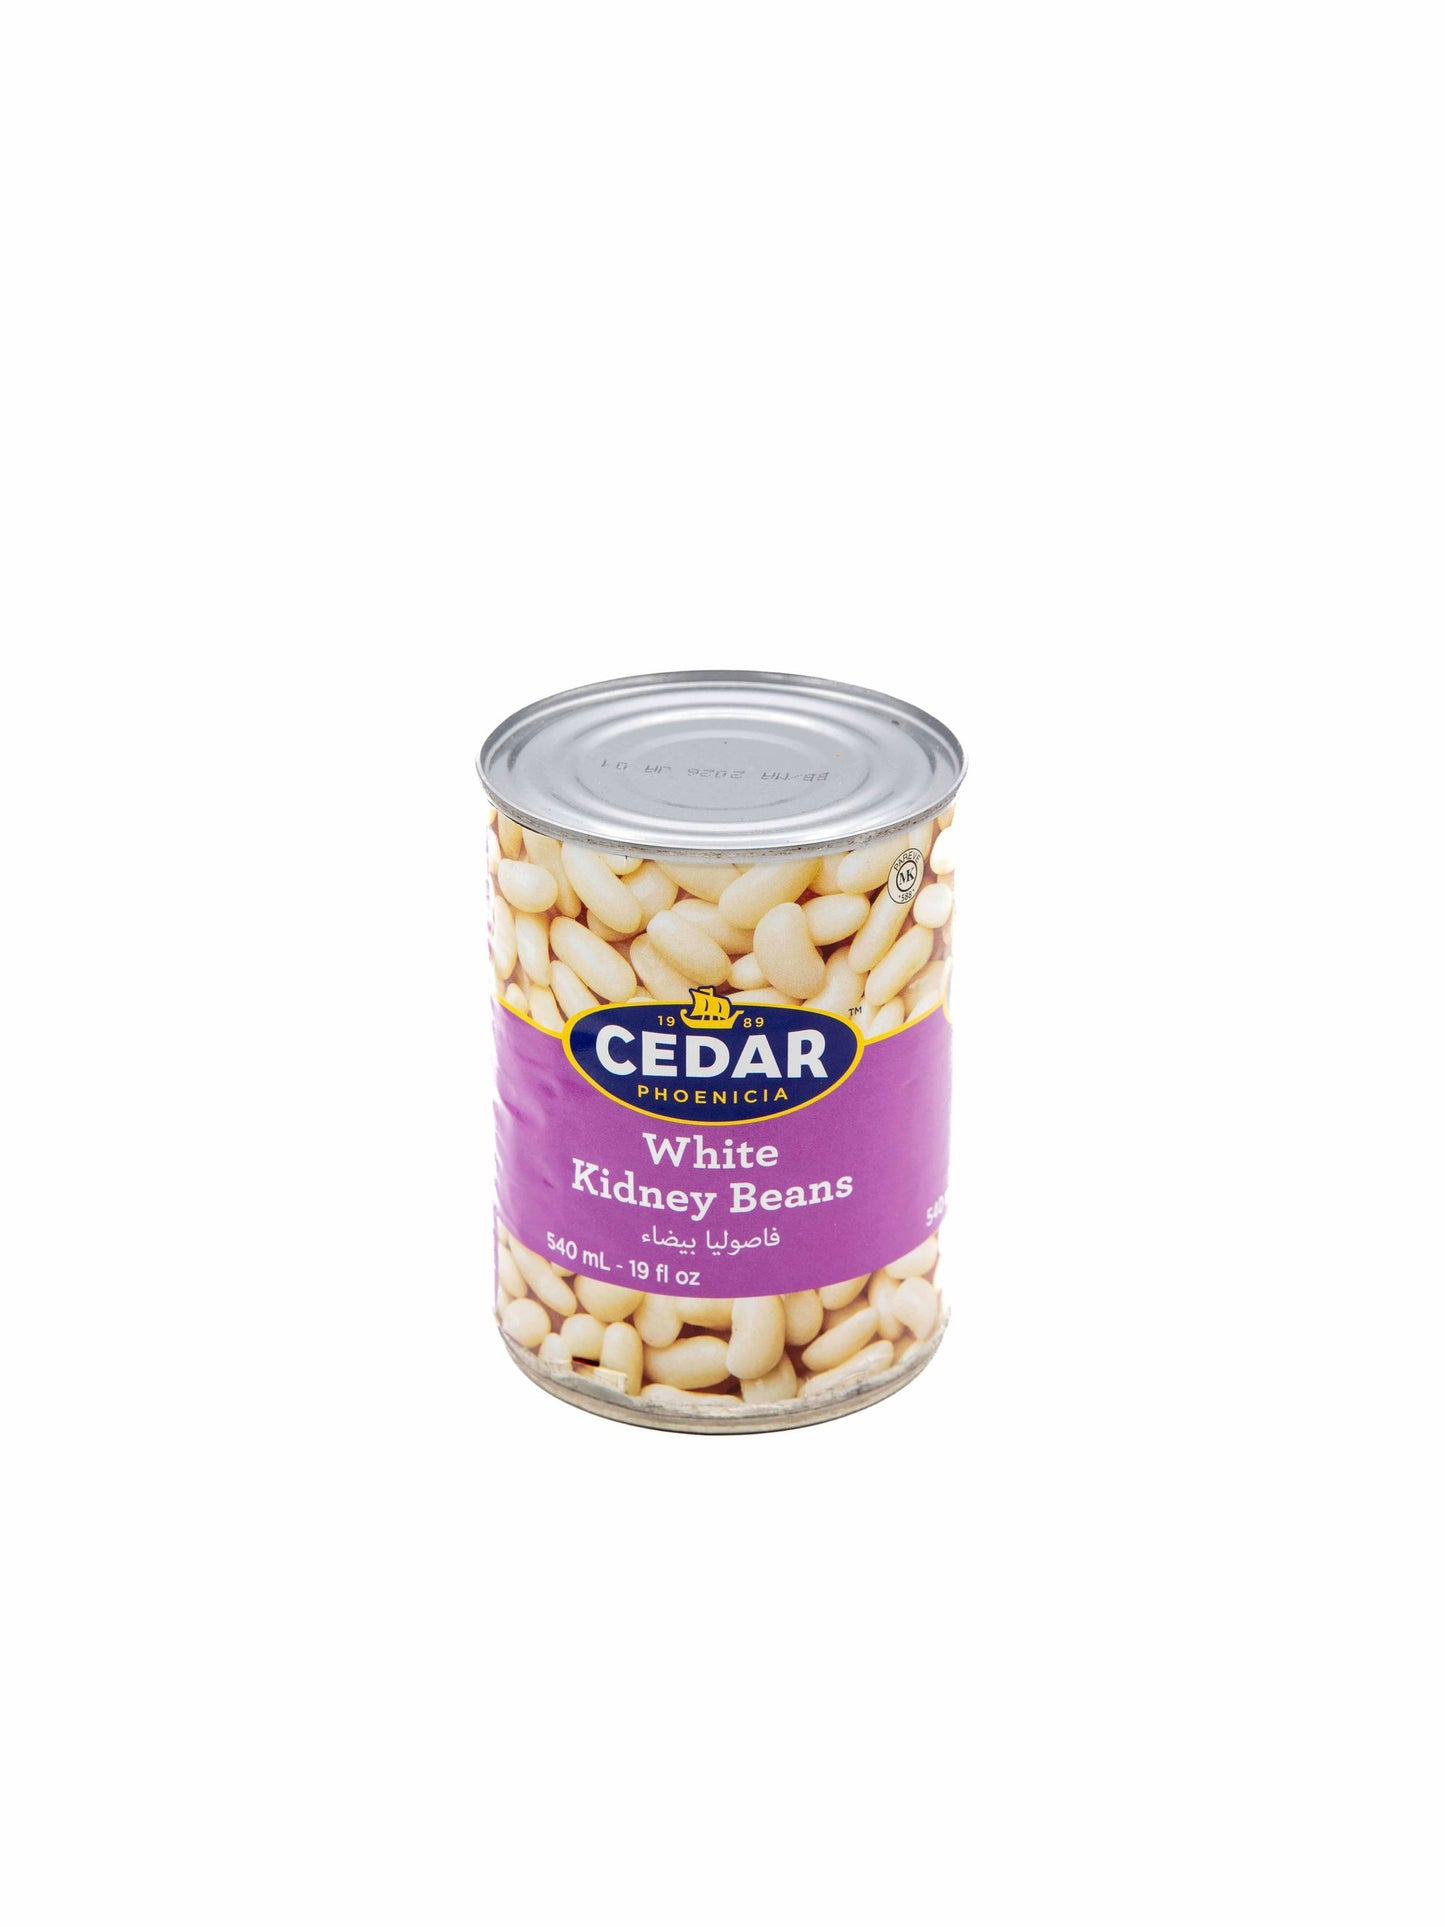 Cedar Canned White Kidney Beans 540 ml